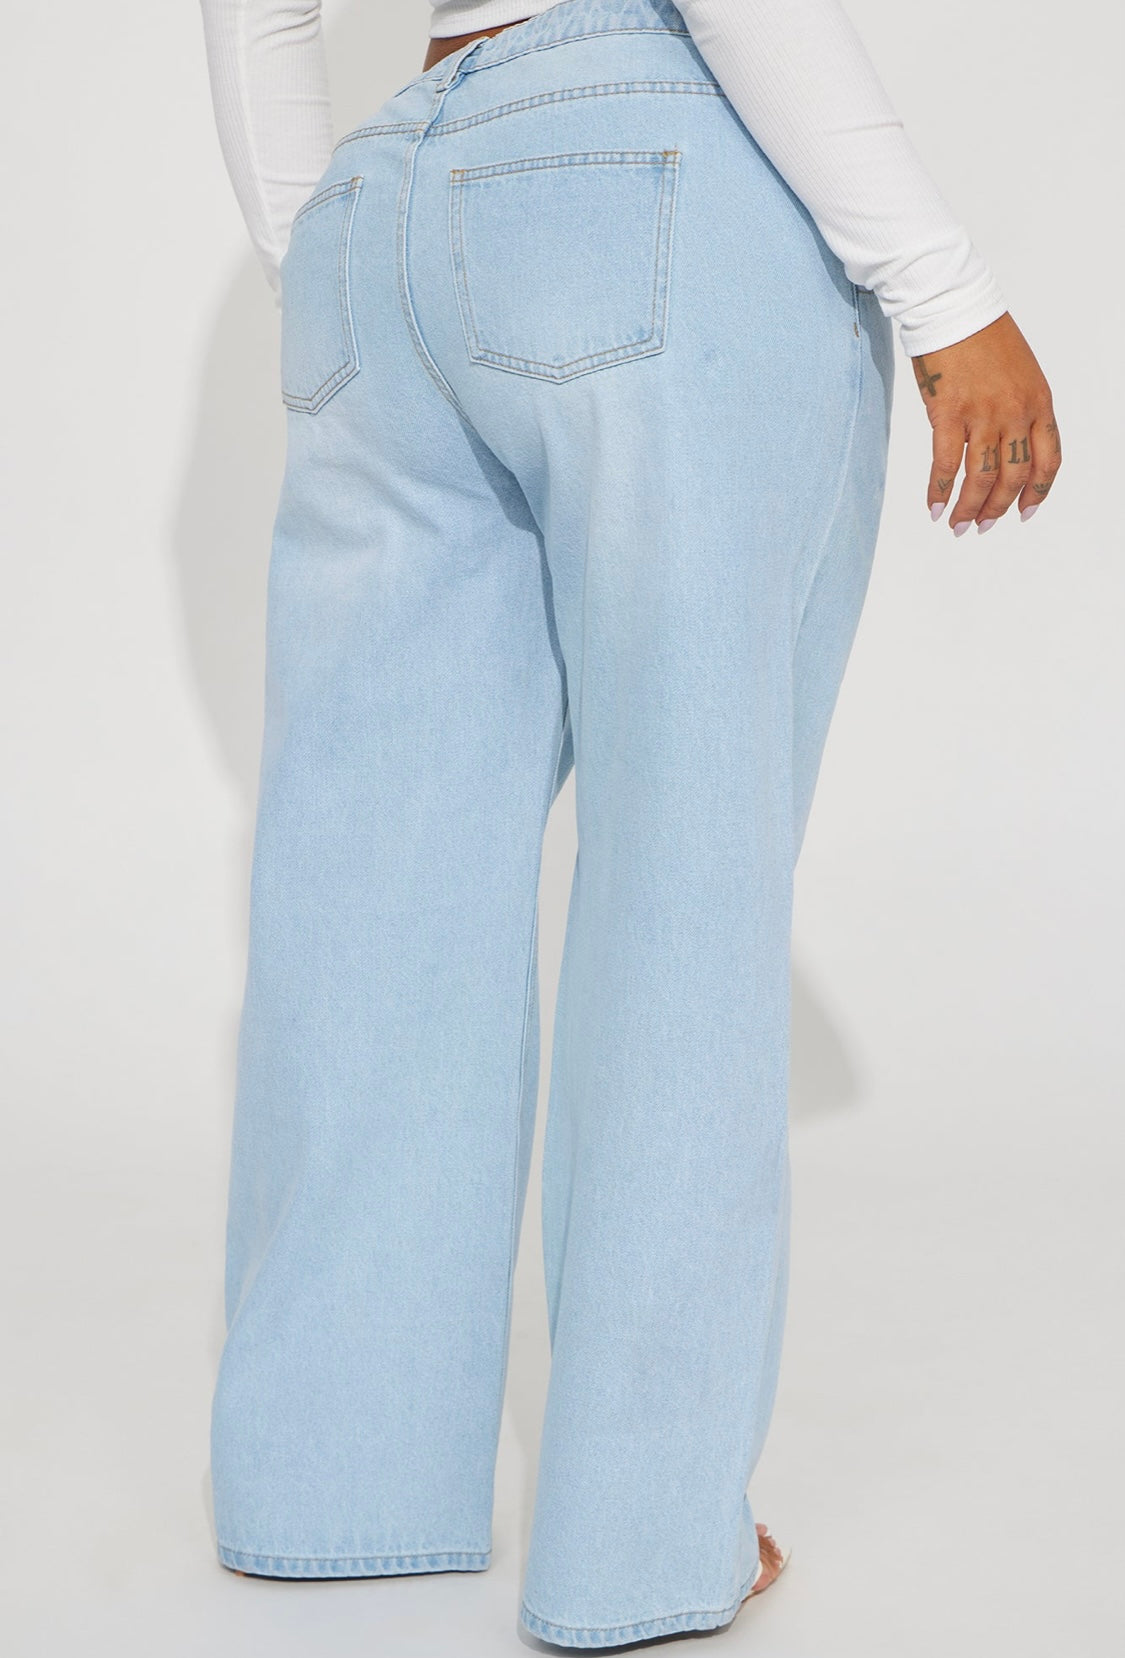 Pantalón Fashion Nova original, azul claro ancho liso.